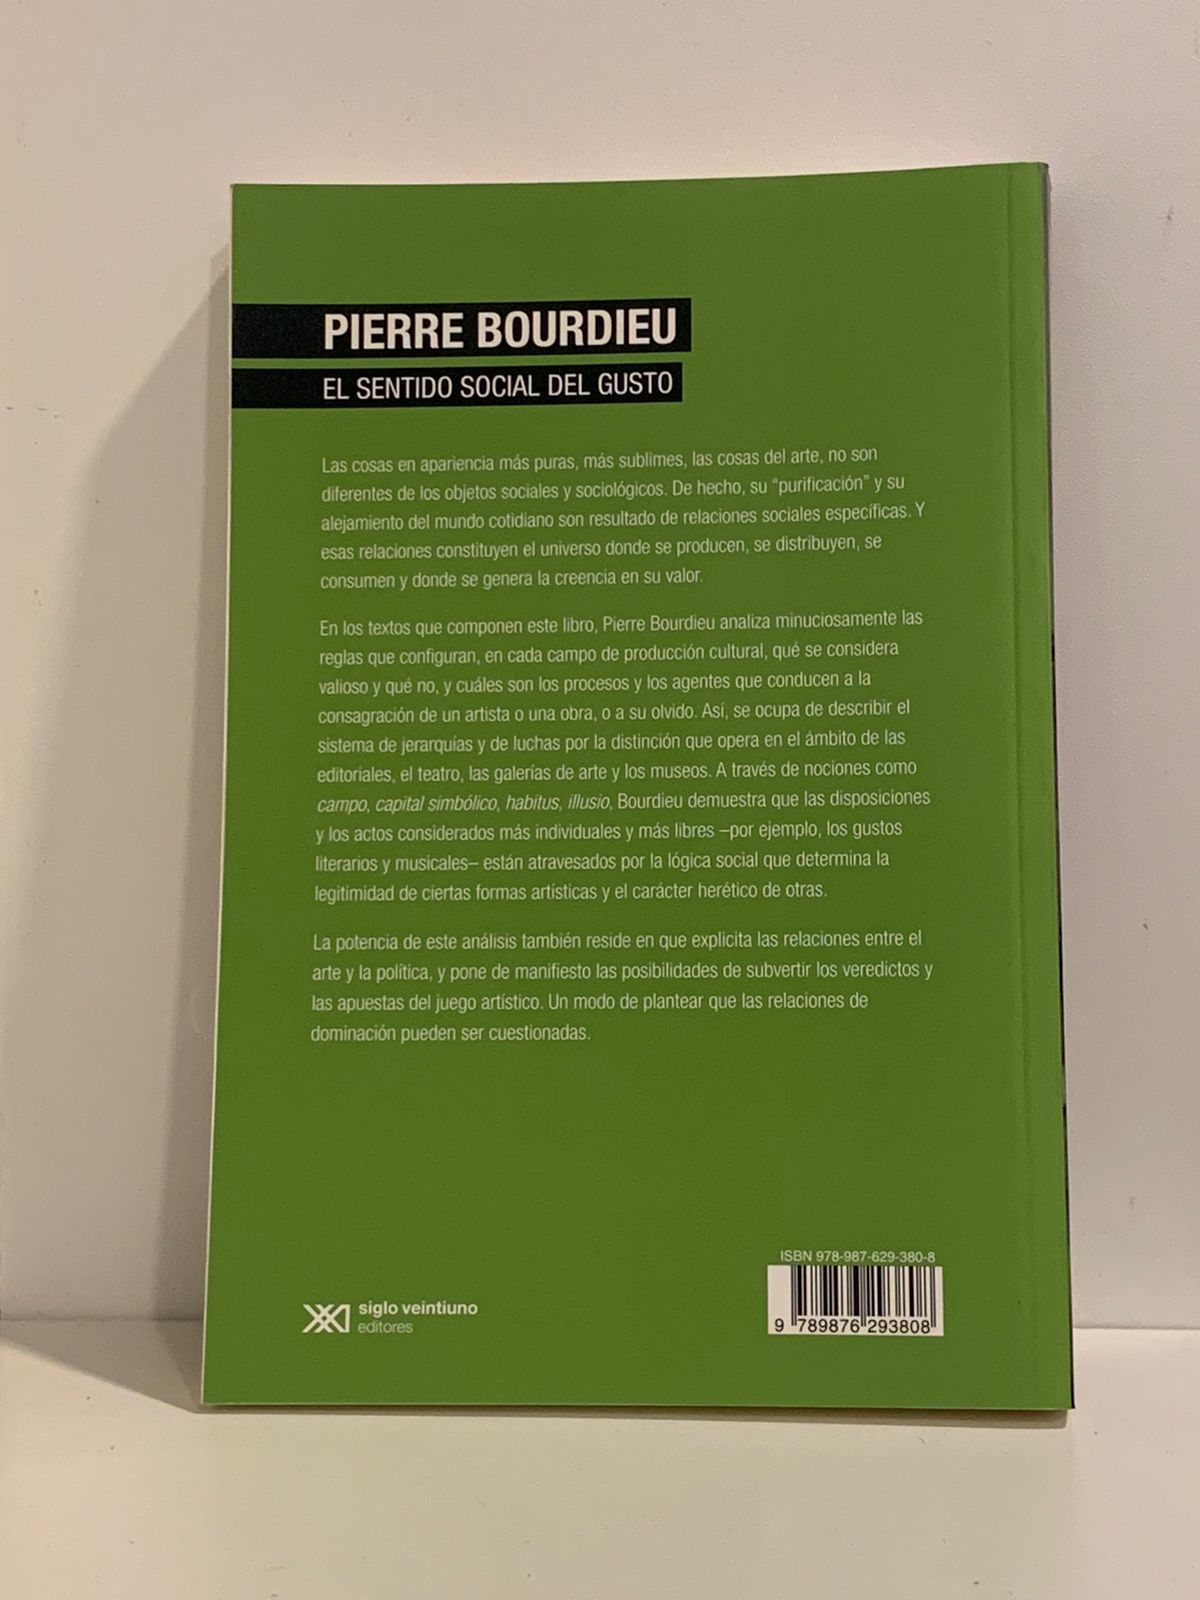 Pierre Bourdifu - El sentido social del gusto (Dorso)